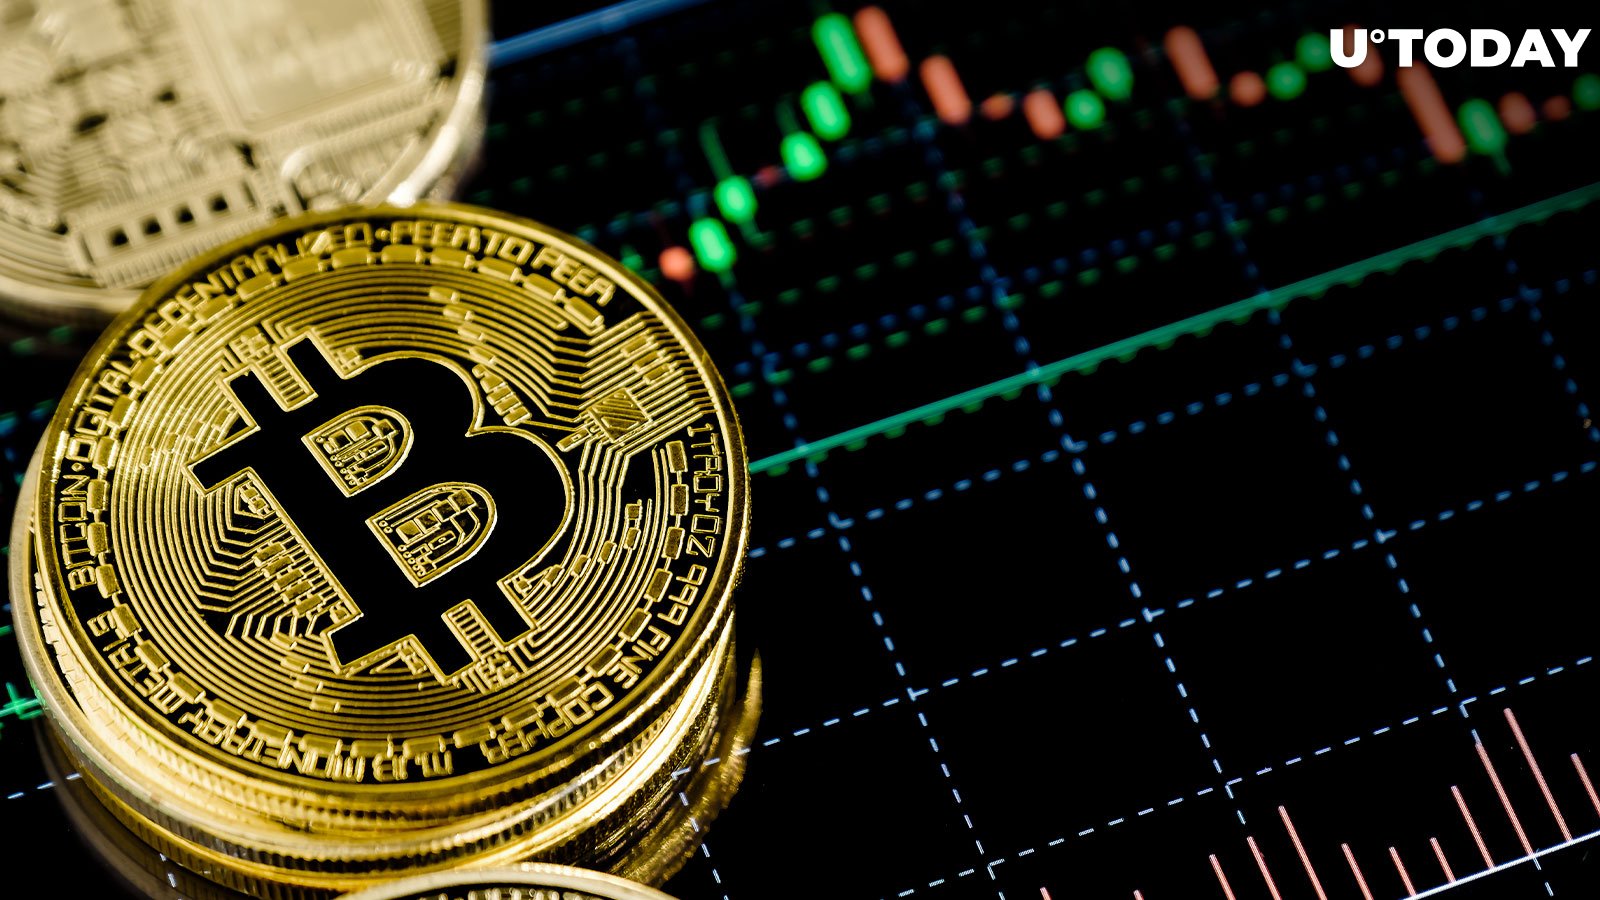 Nhà phân tích hàng đầu cho biết giá Bitcoin hướng tới 58,000 USD trước sự kiện Halving